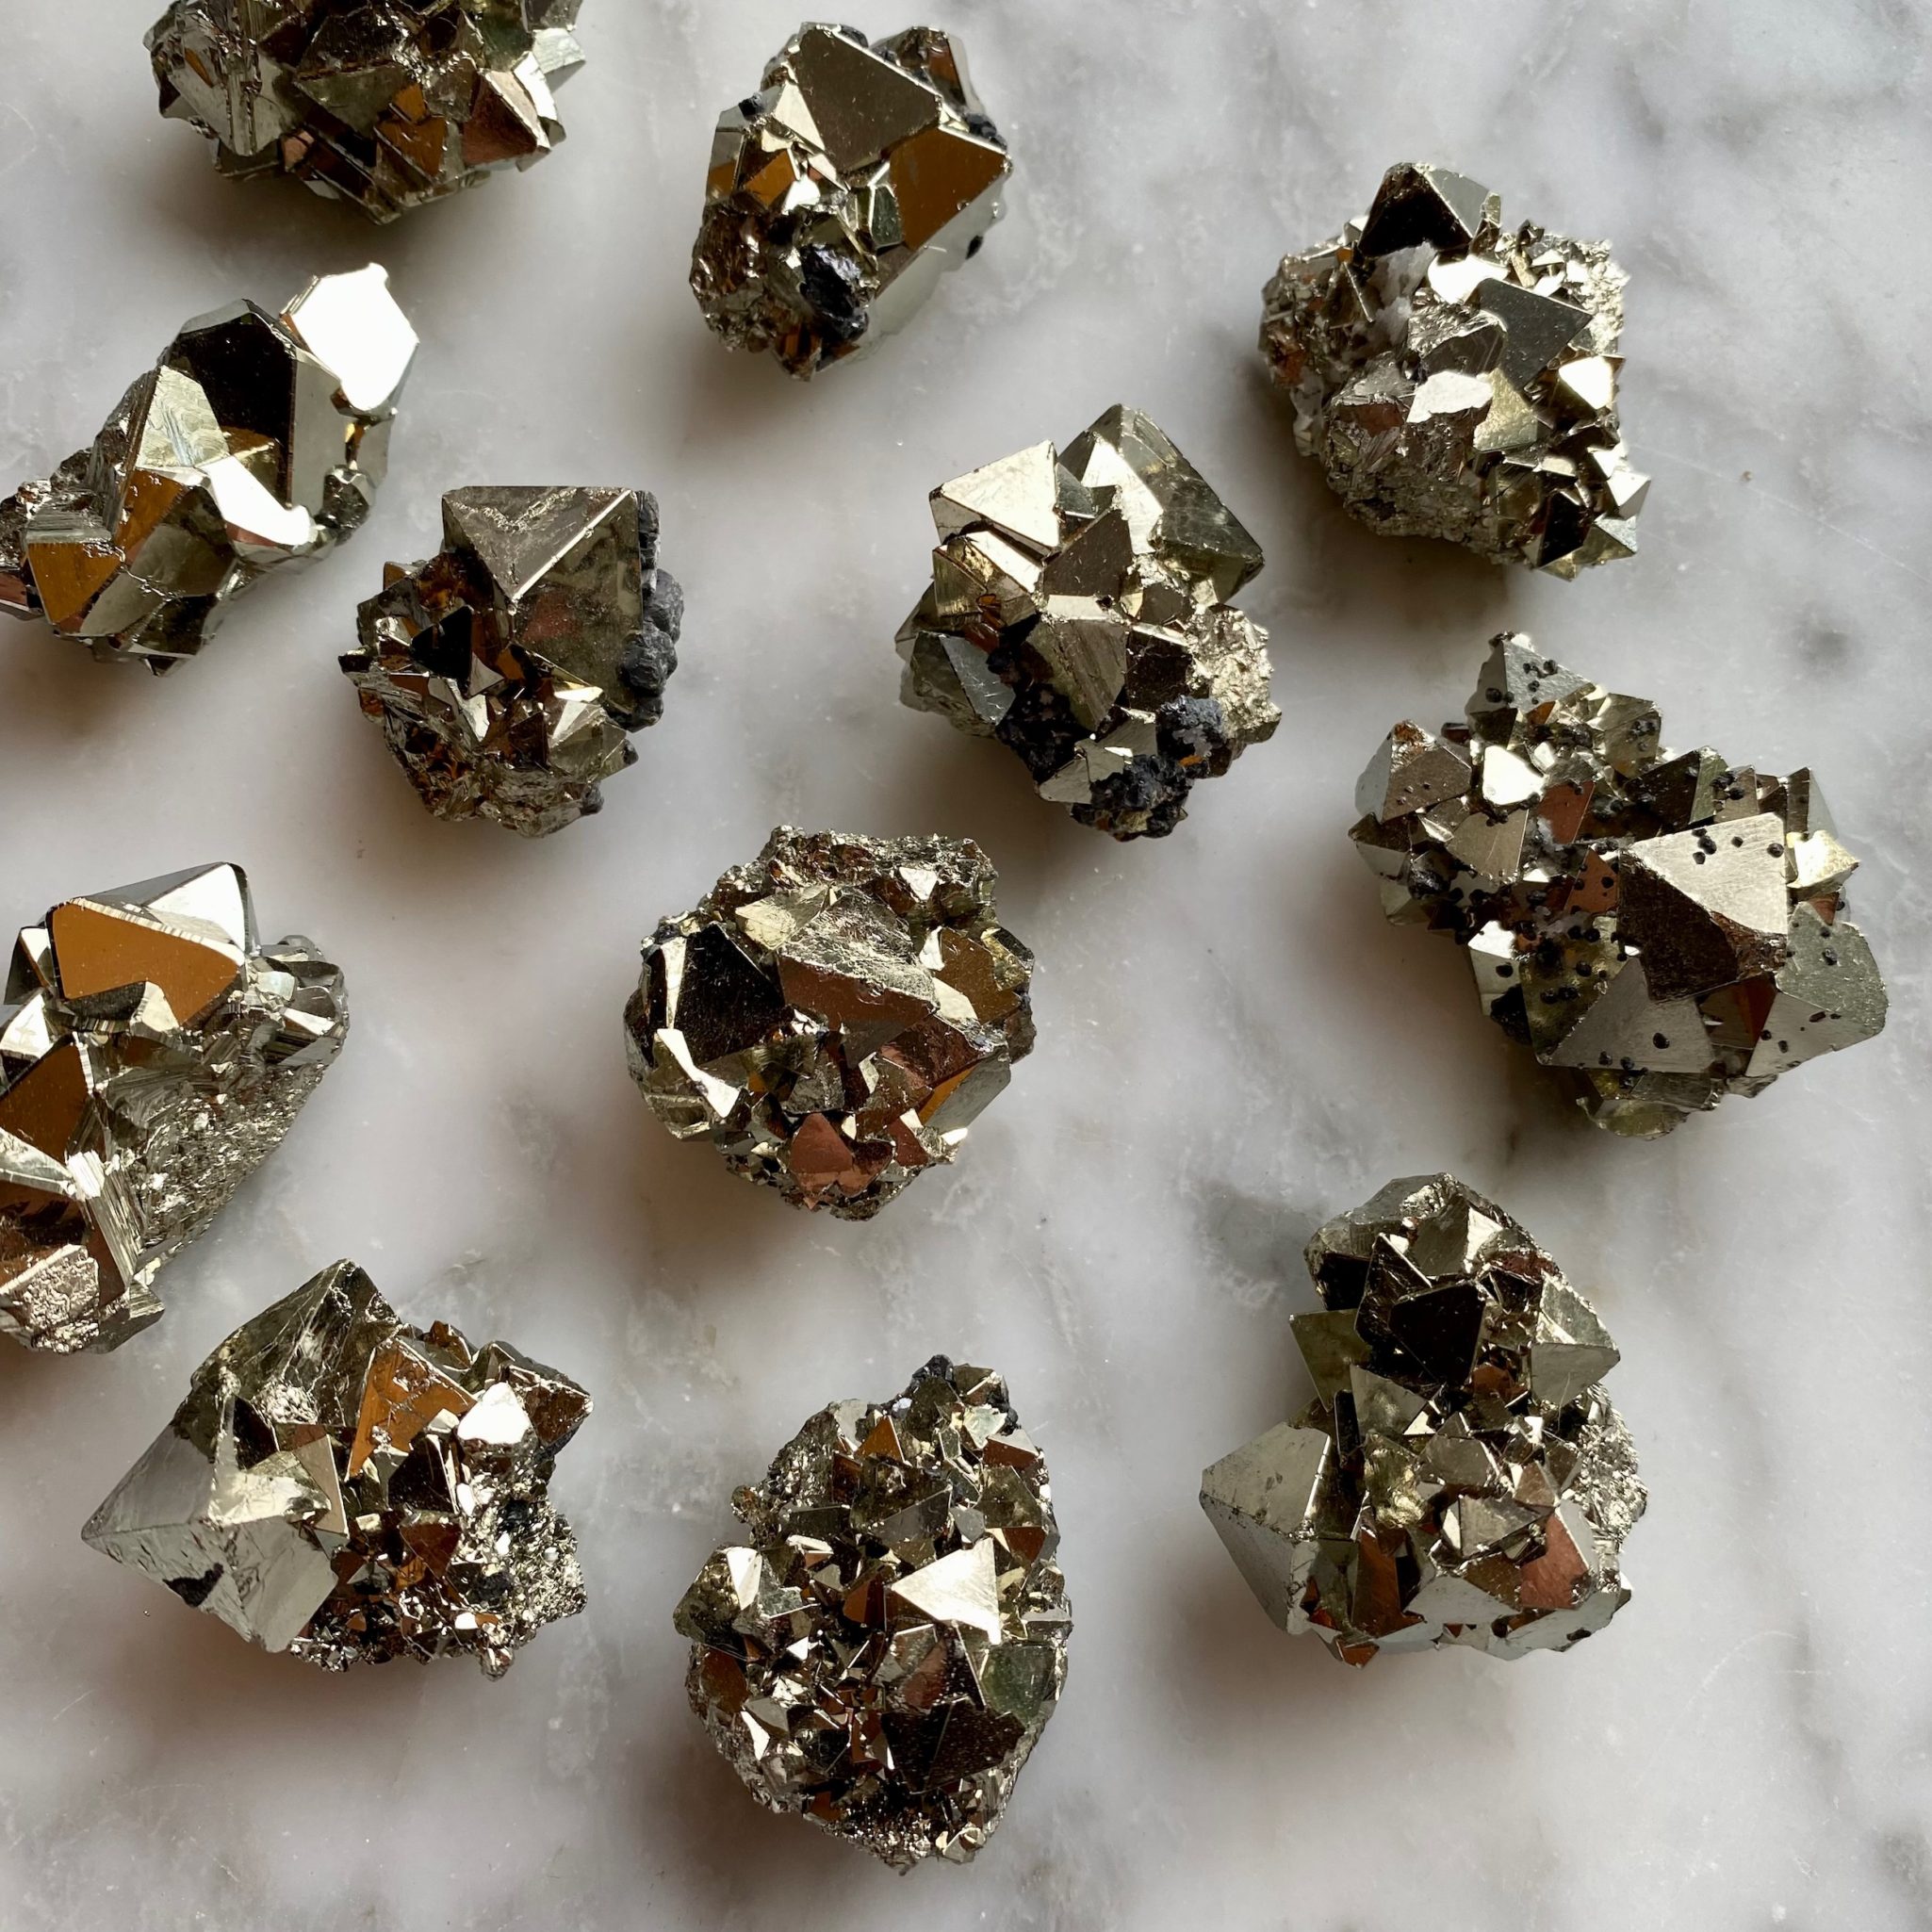 pyrite crystal cluster specimen - spécimen de macle de cristaux de pyrite géométrique